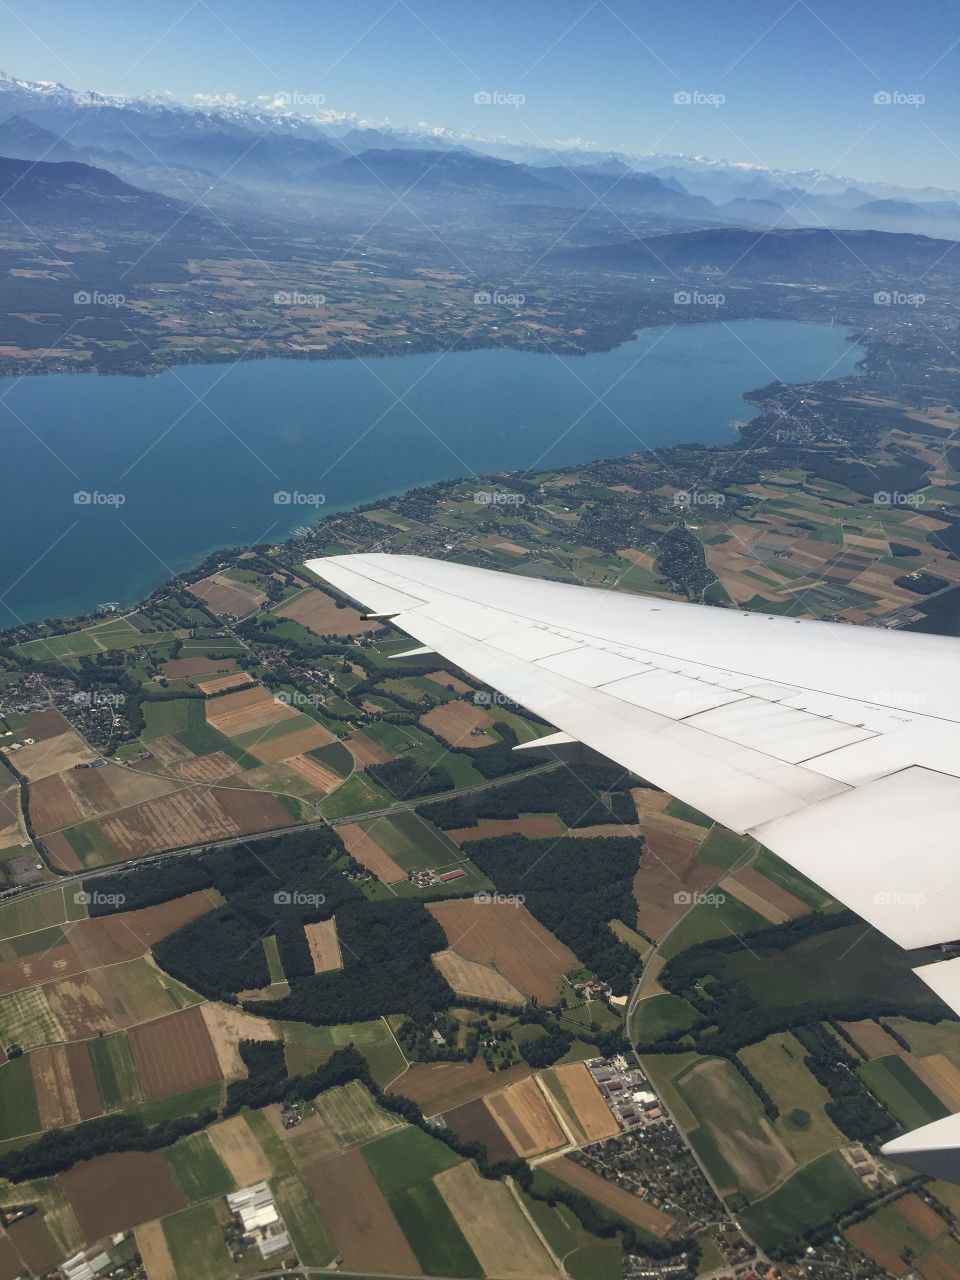 Geneva from airplane